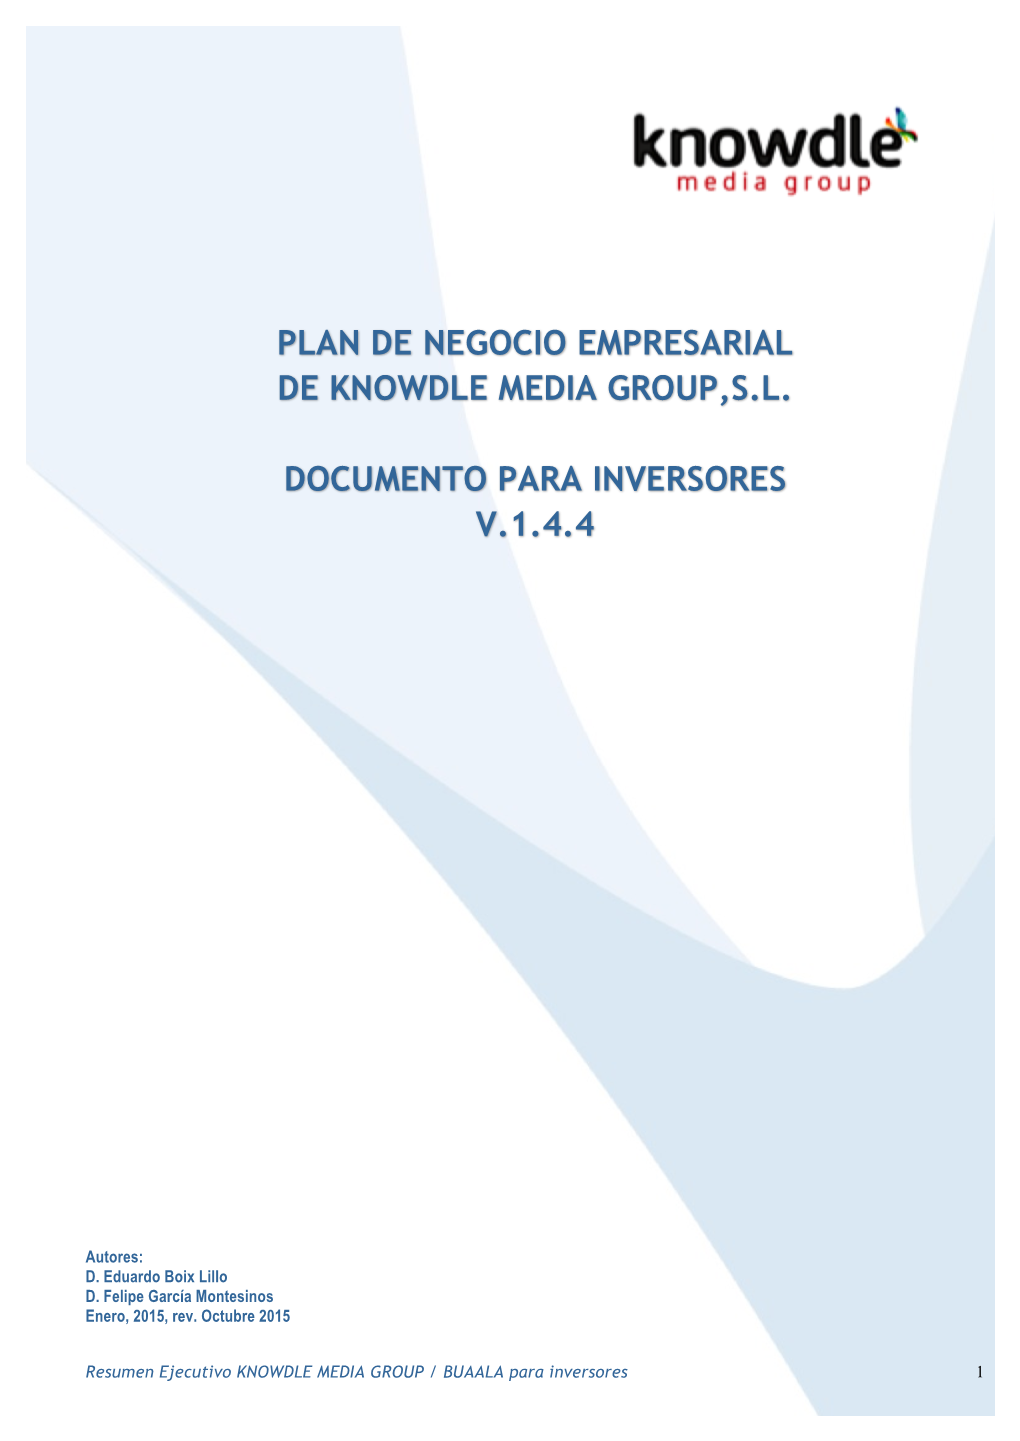 Plan De Negocio Empresarial De Knowdle Media Group,S.L